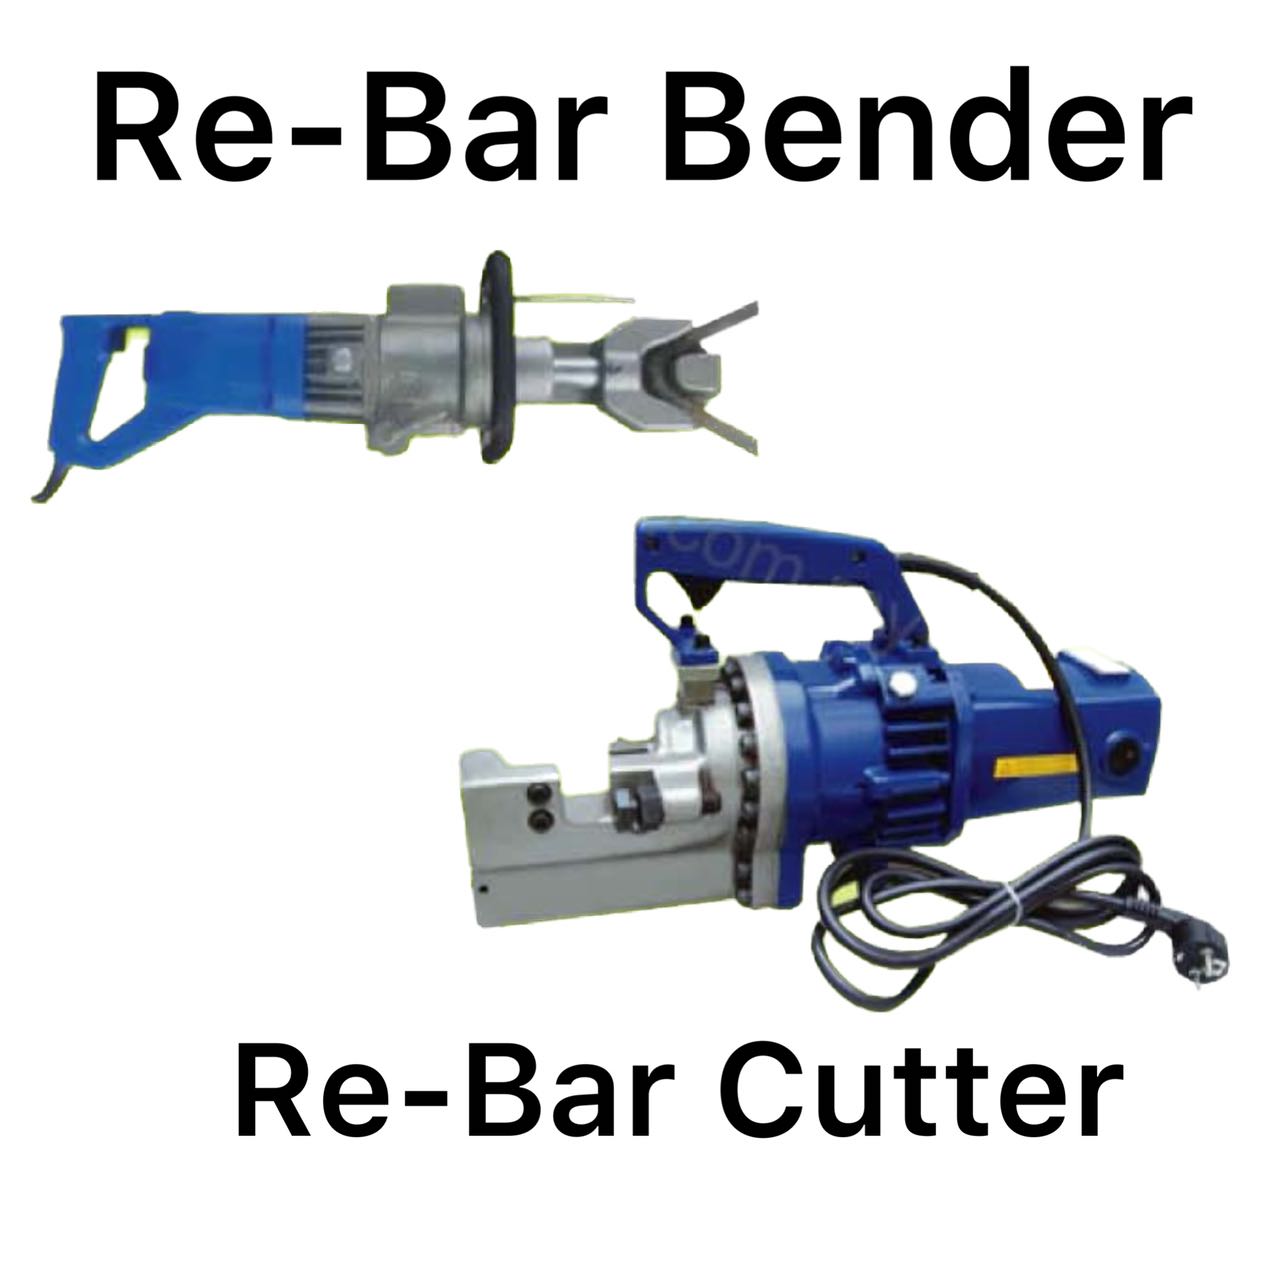 RE-Bar Bender and RE-Bar Cutter